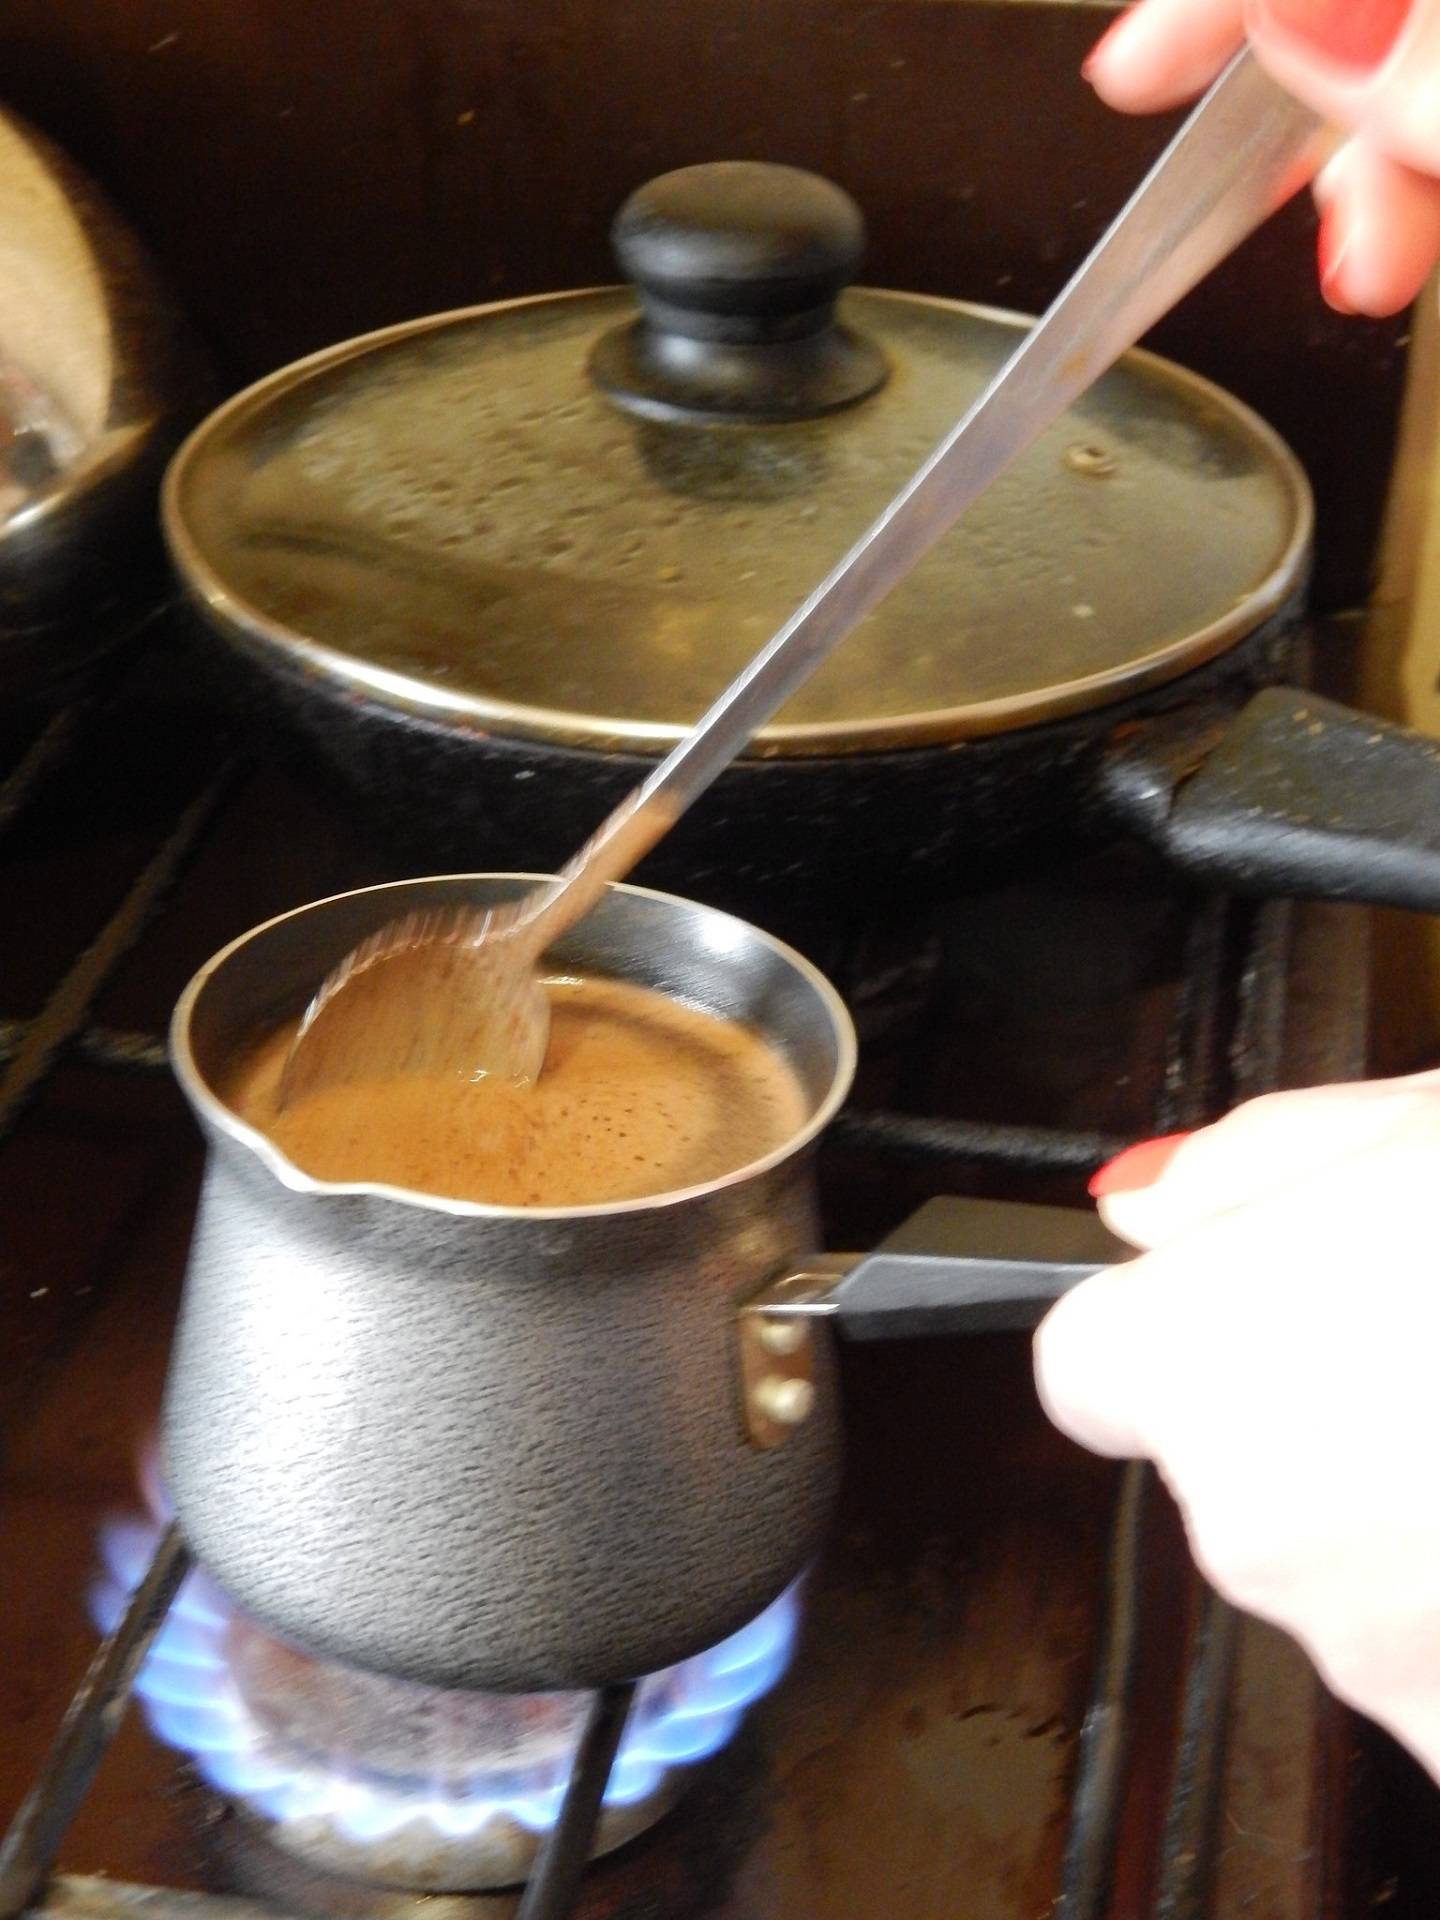 Как правильно сварить вкусный кофе в турке дома на плите: рецепты приготовления классического кофе по-турецки, с молоком и специями, с пенкой и шоколадом с фото и видео | qulady